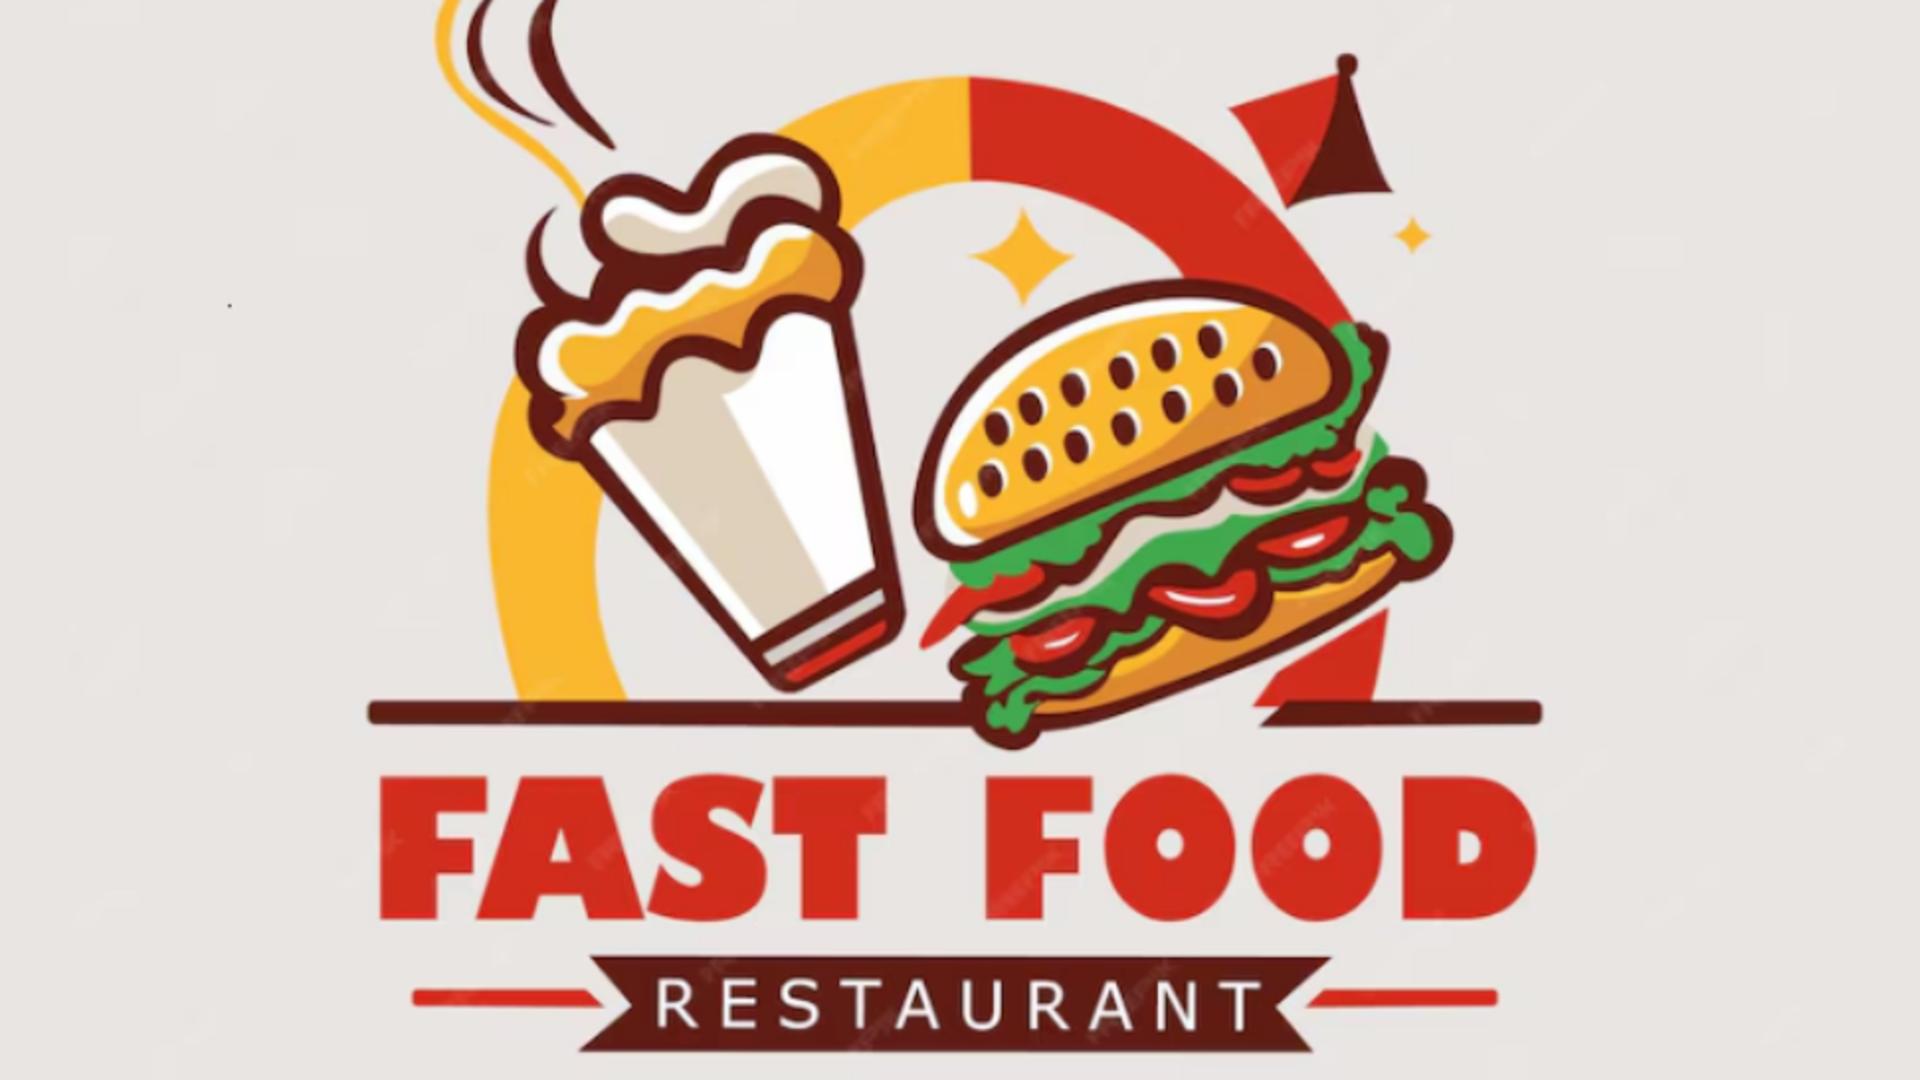 De ce numele marilor restaurante fast food sunt scrise cu roșu